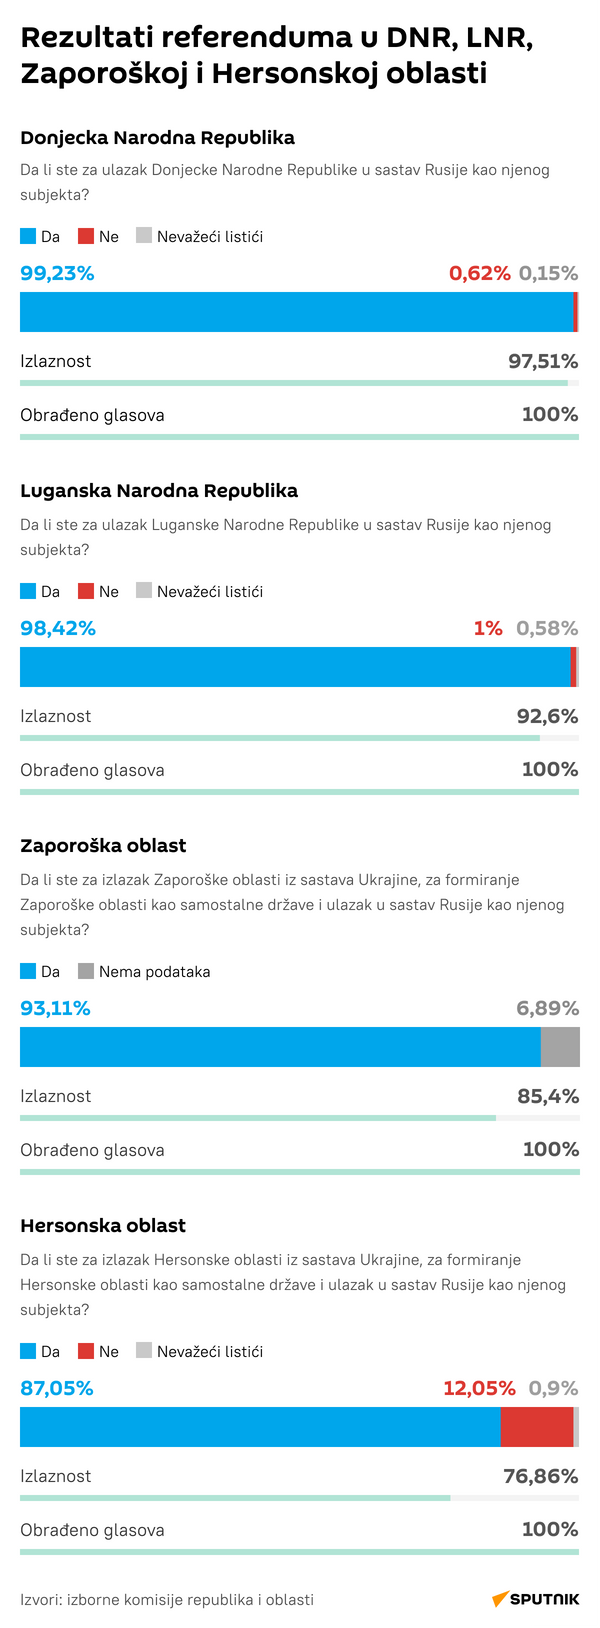 Infografika    Rezultati referenduma u DNR, LNR, Zaporoškoj i Hersonskoj oblasti LATINICA desk - Sputnik Srbija